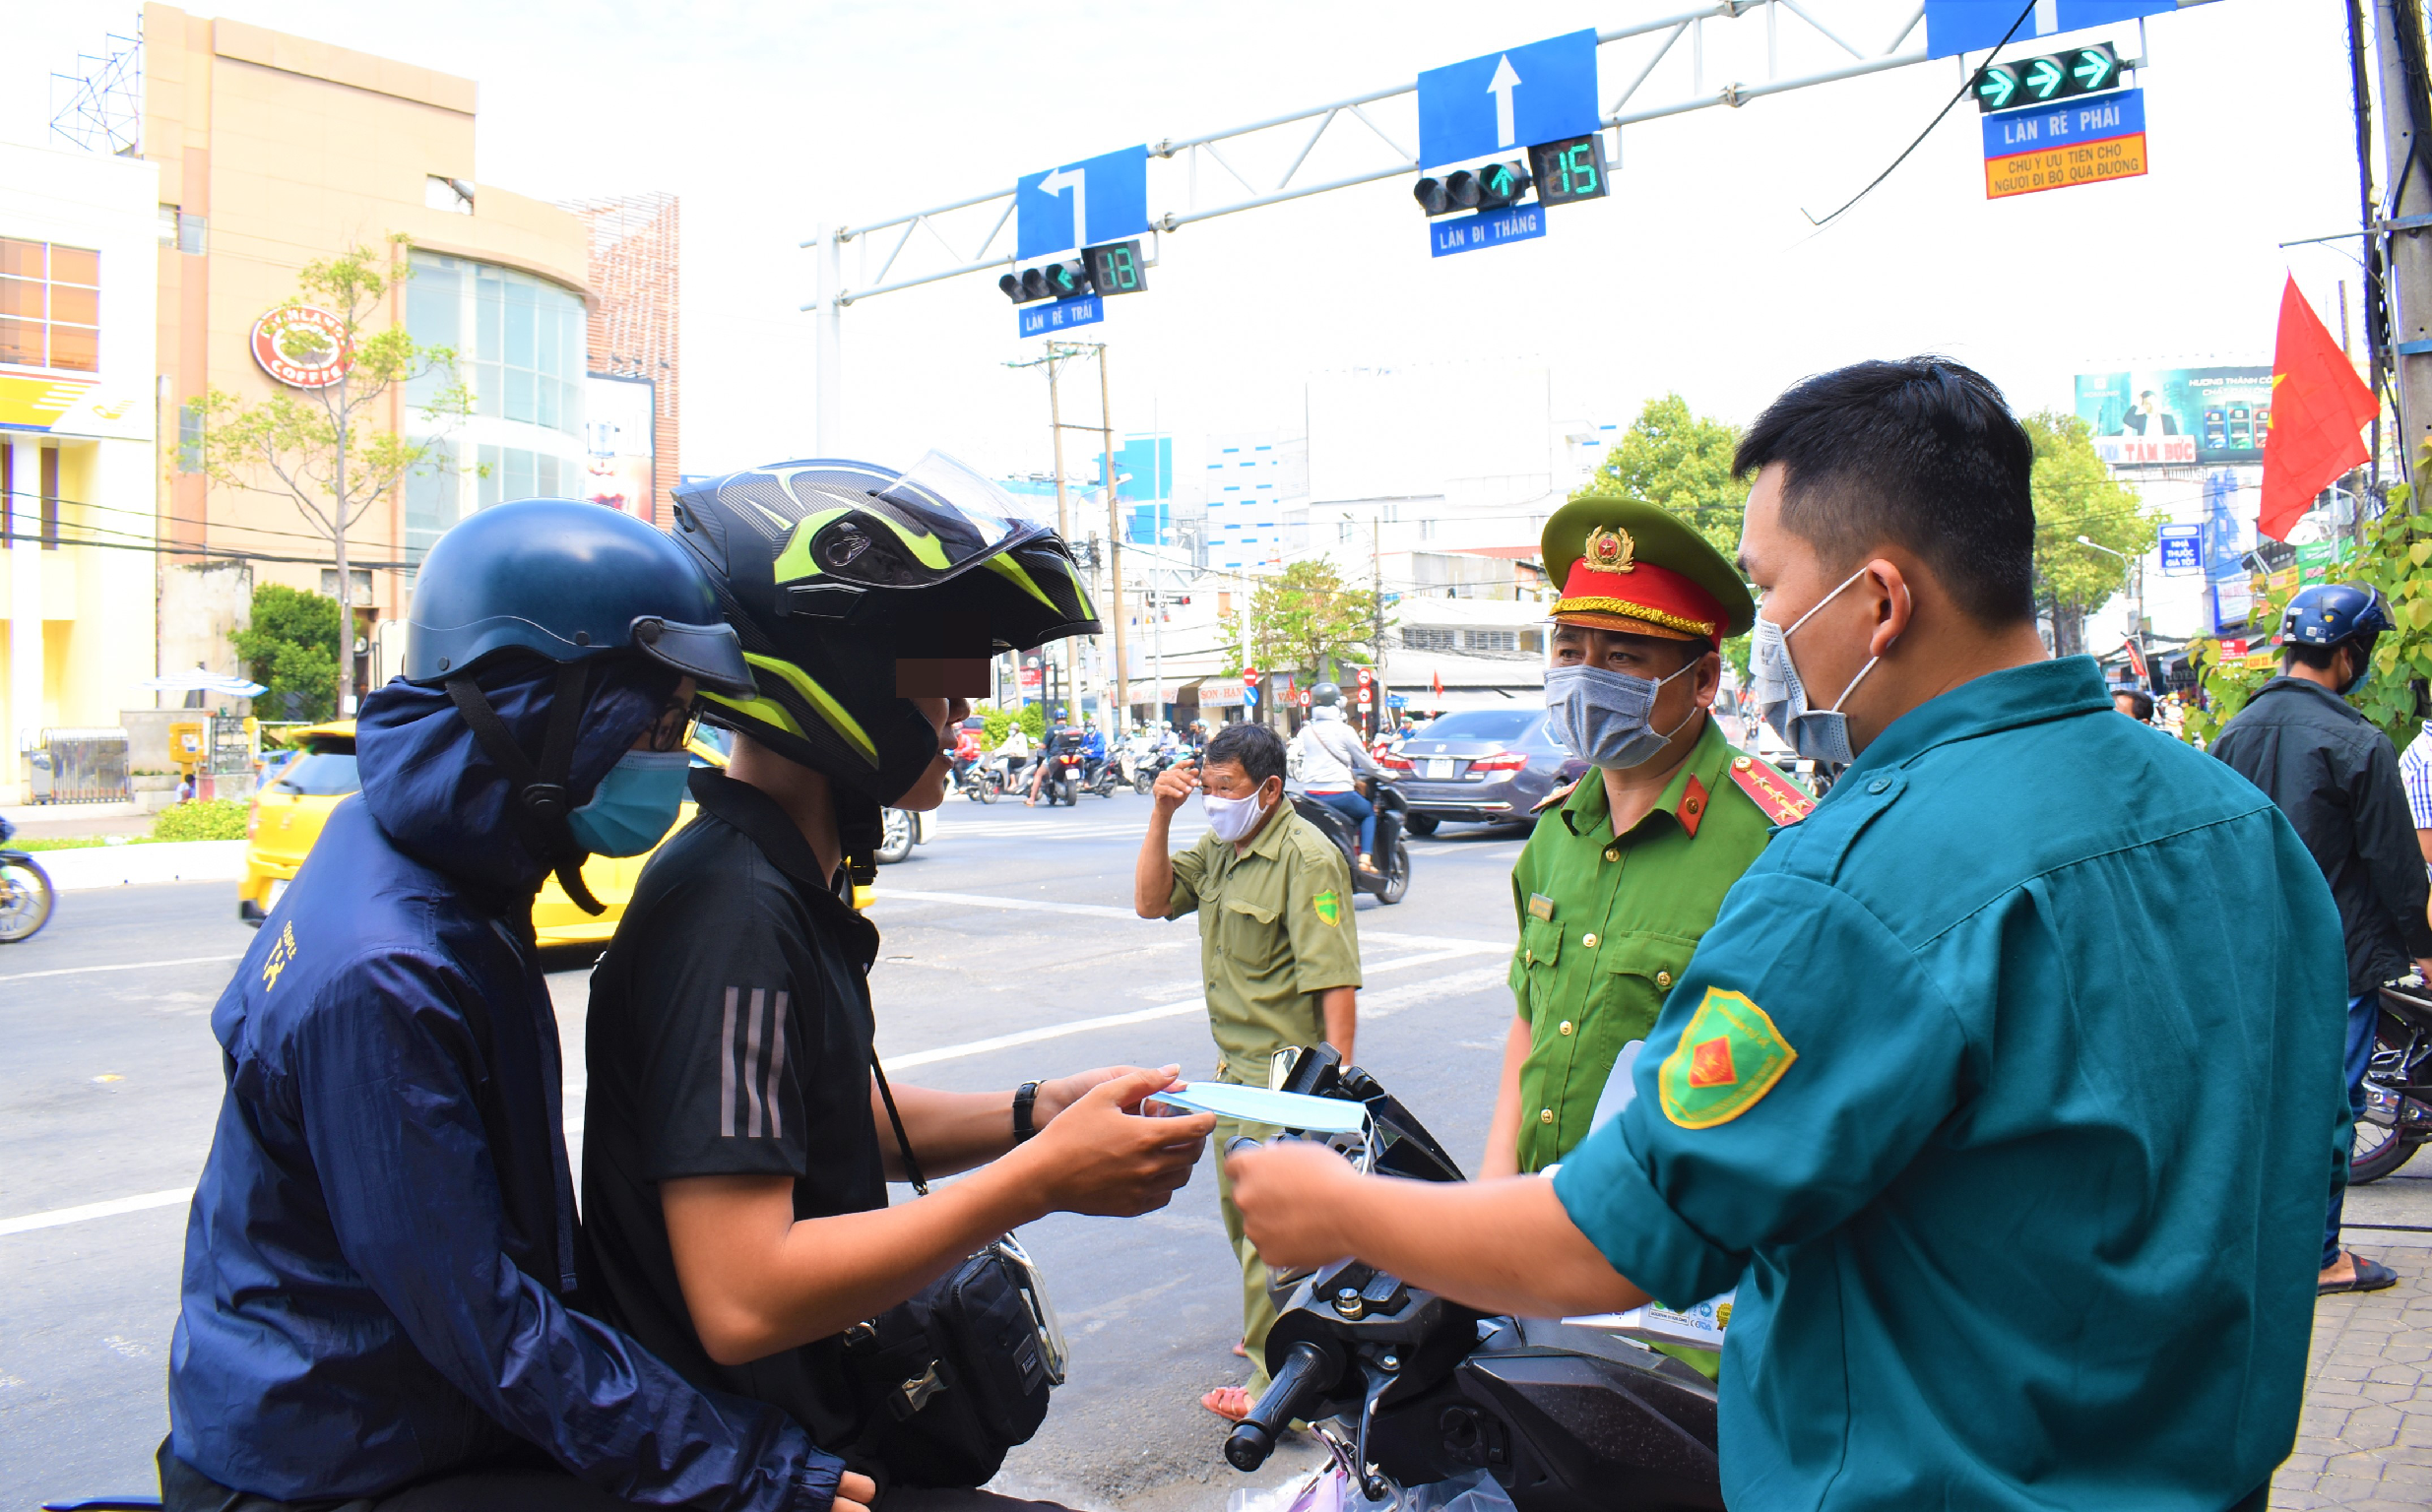 Lực lượng công an quận Ninh Kiều kiểm tra, tuyên truyền, nhắc nhở người dân thực hiện các biện pháp phòng, chống dịch COVID-19. Trong ảnh là công an quận Ninh Kiều nhắc nhở và phát khẩu trang cho người dân. Ảnh: Thành Nhân